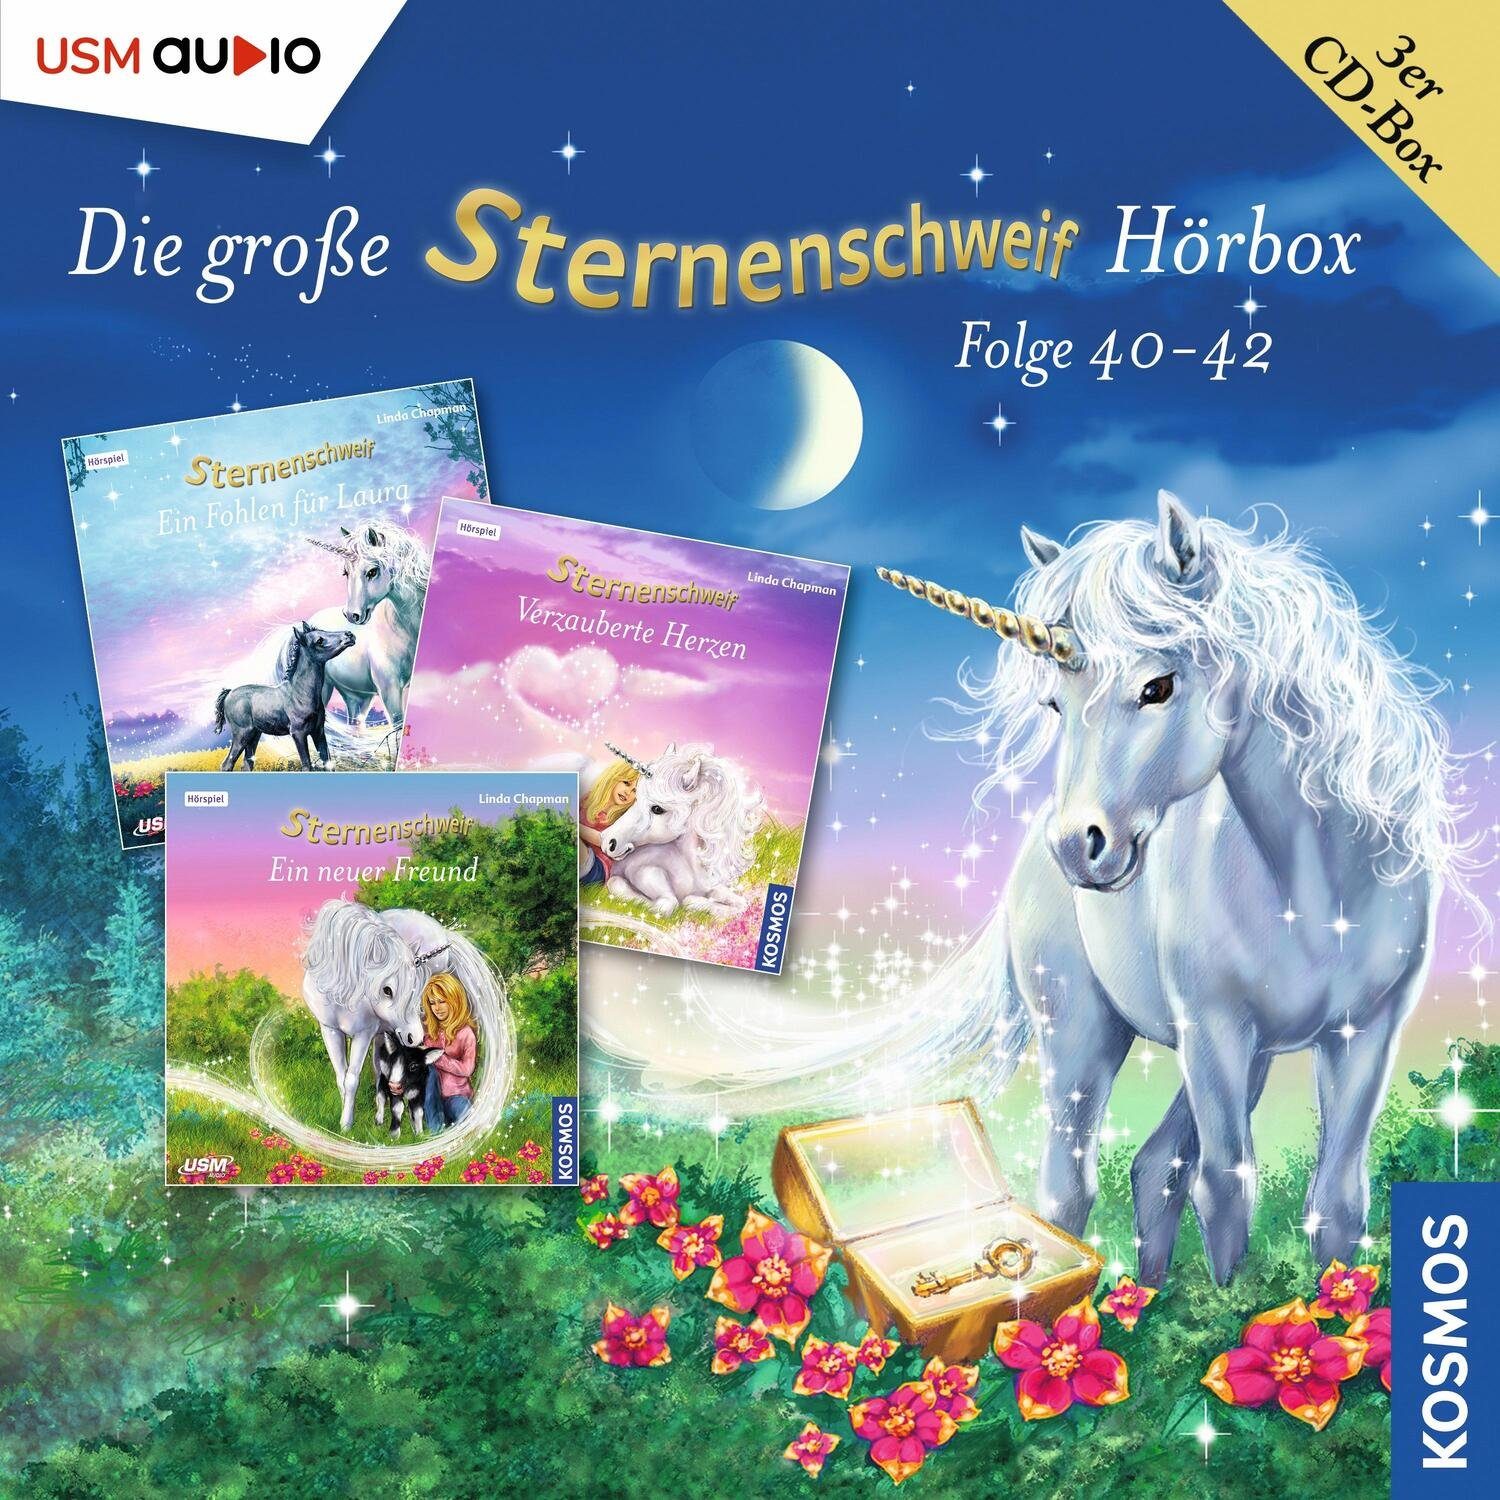 United Soft Media Hörspiel Die große Sternenschweif Hörbox Folgen 40-42 (3 Audio CDs)